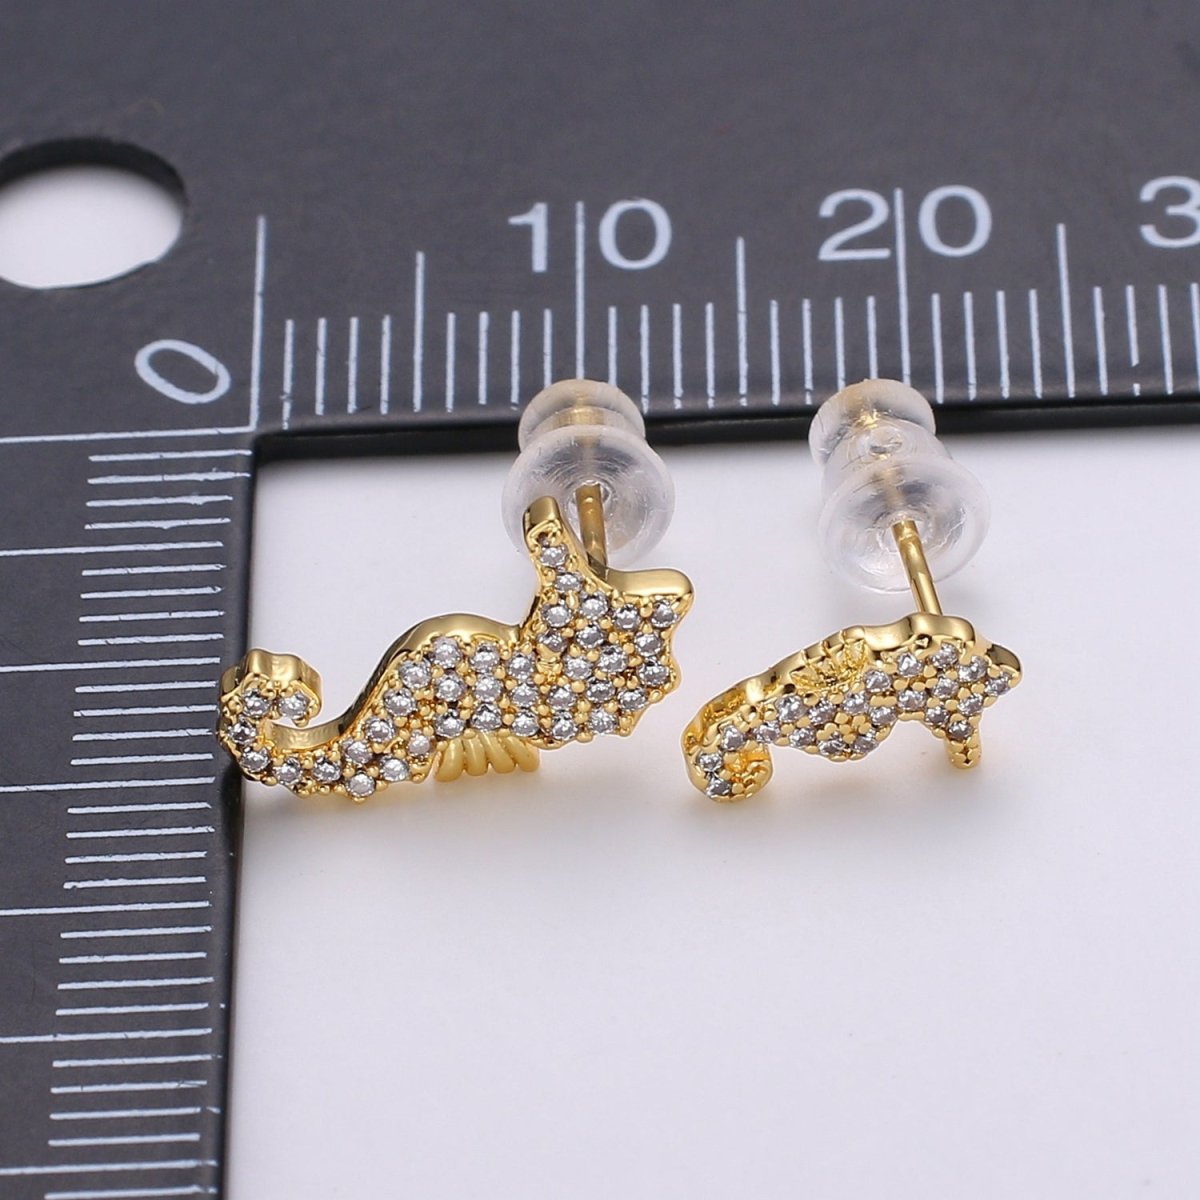 Mismatched Stud Earring Dainty Sea Horse Stud Earring, Gold Sea Horse Earring, Micro Pave Earrings Animal Studs Minimalist Stud Earrings Q-370 - DLUXCA